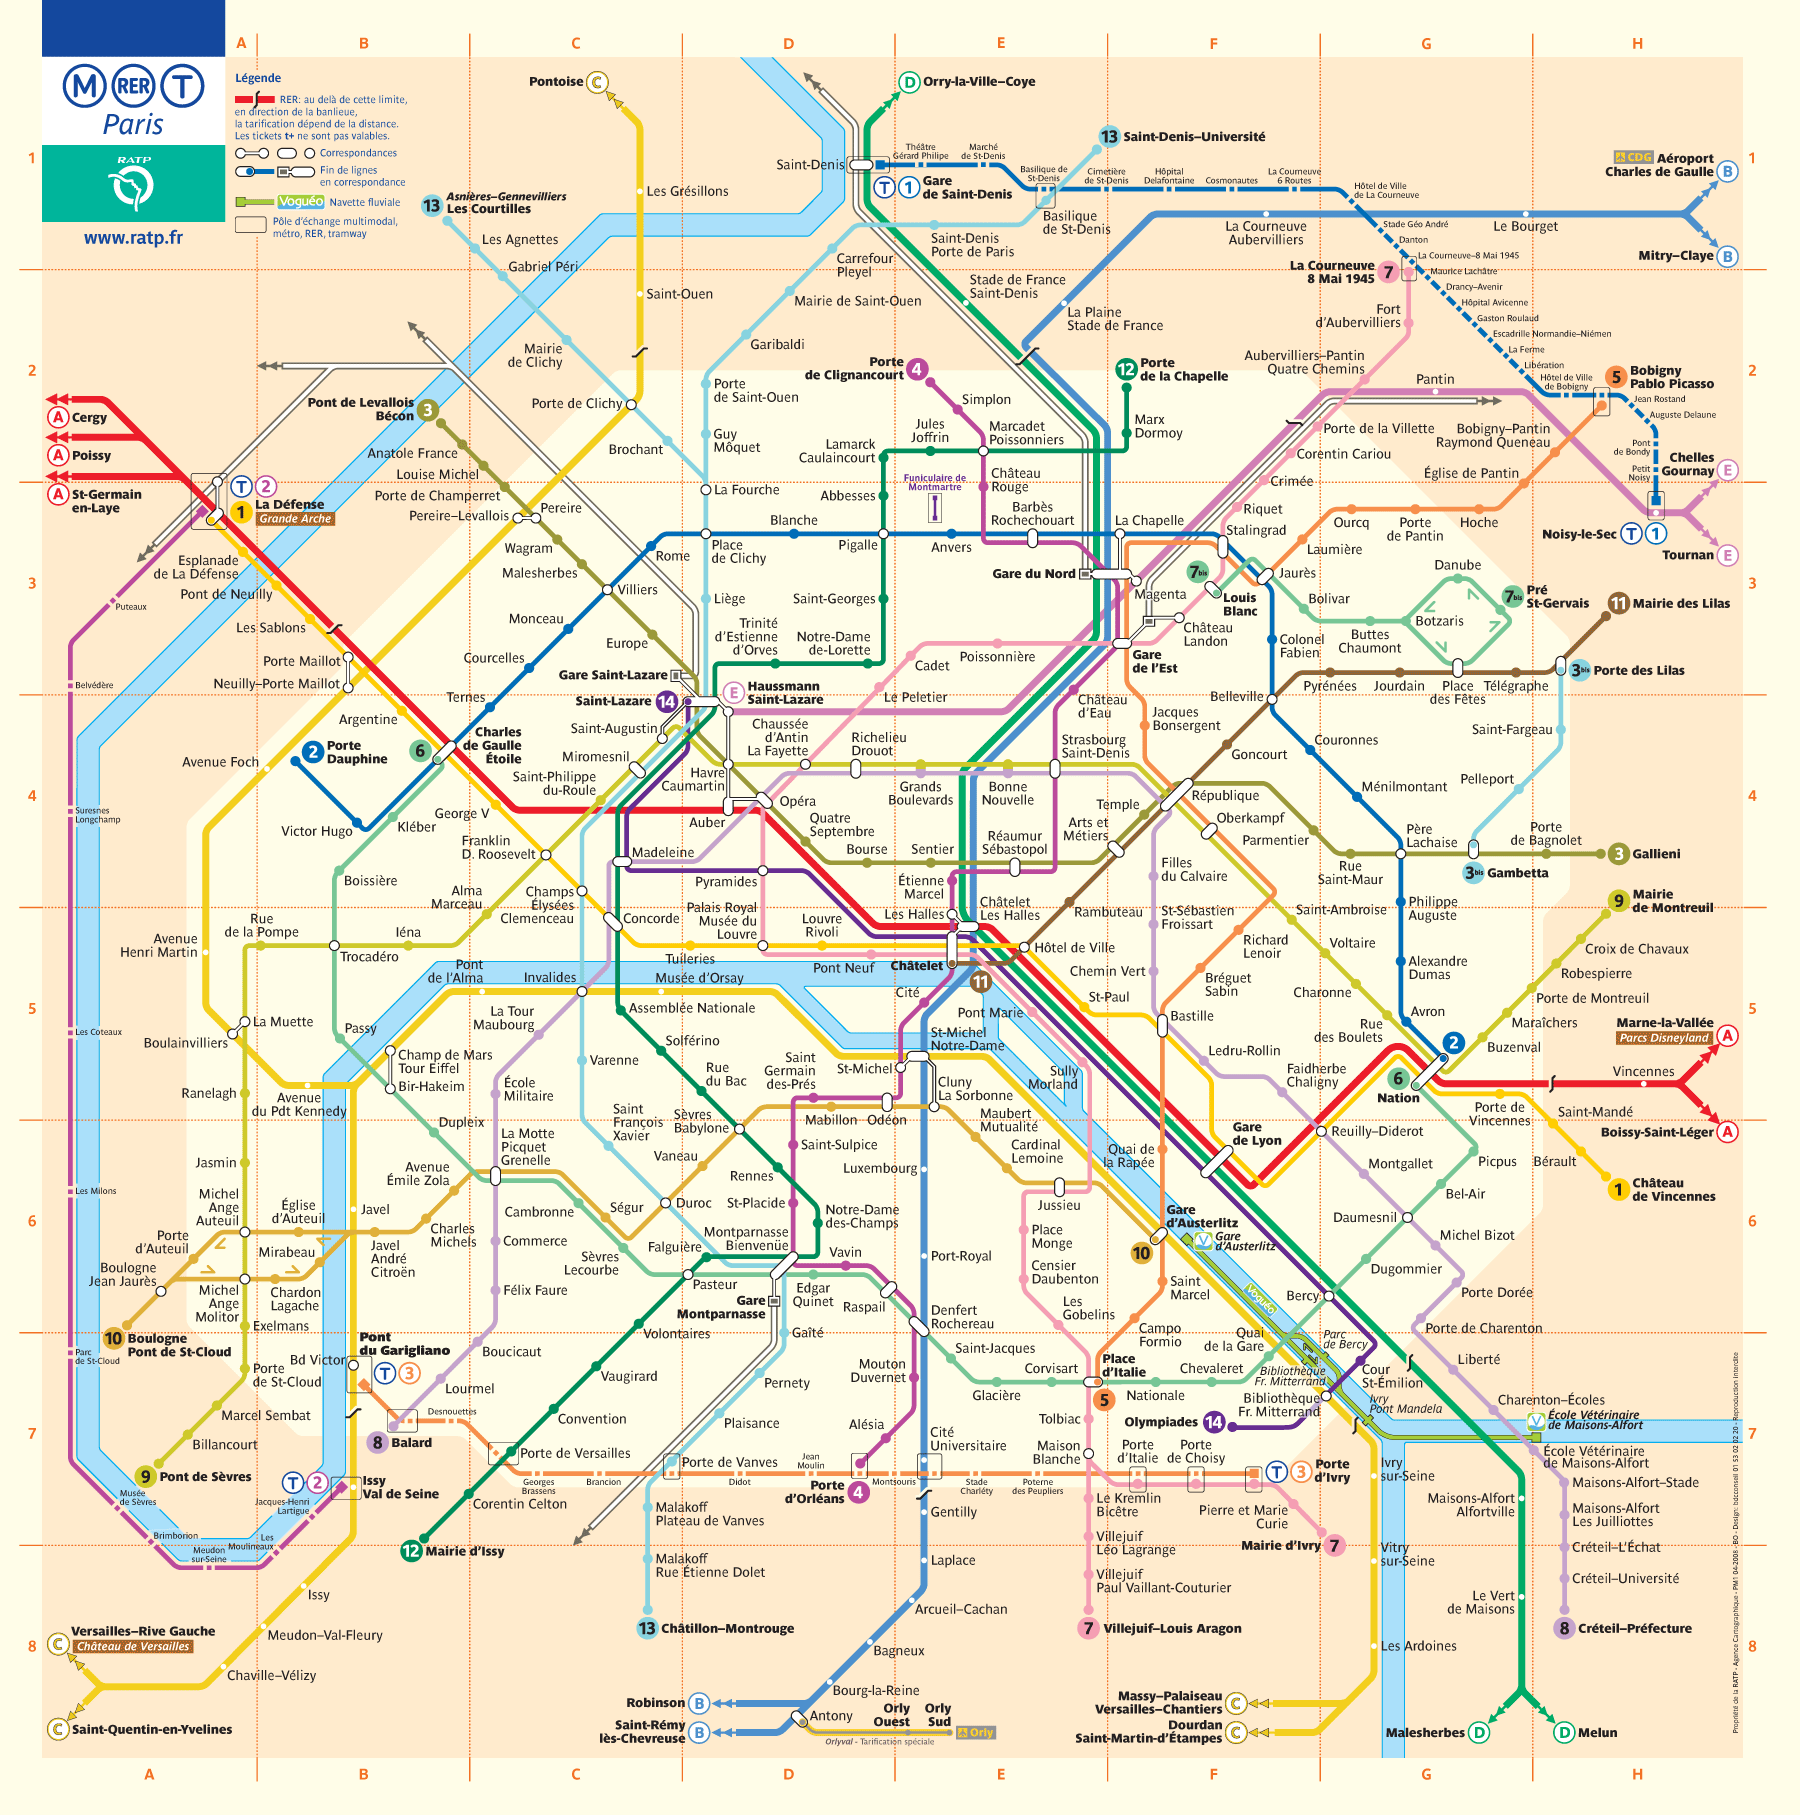 Paris_metro_harita.png